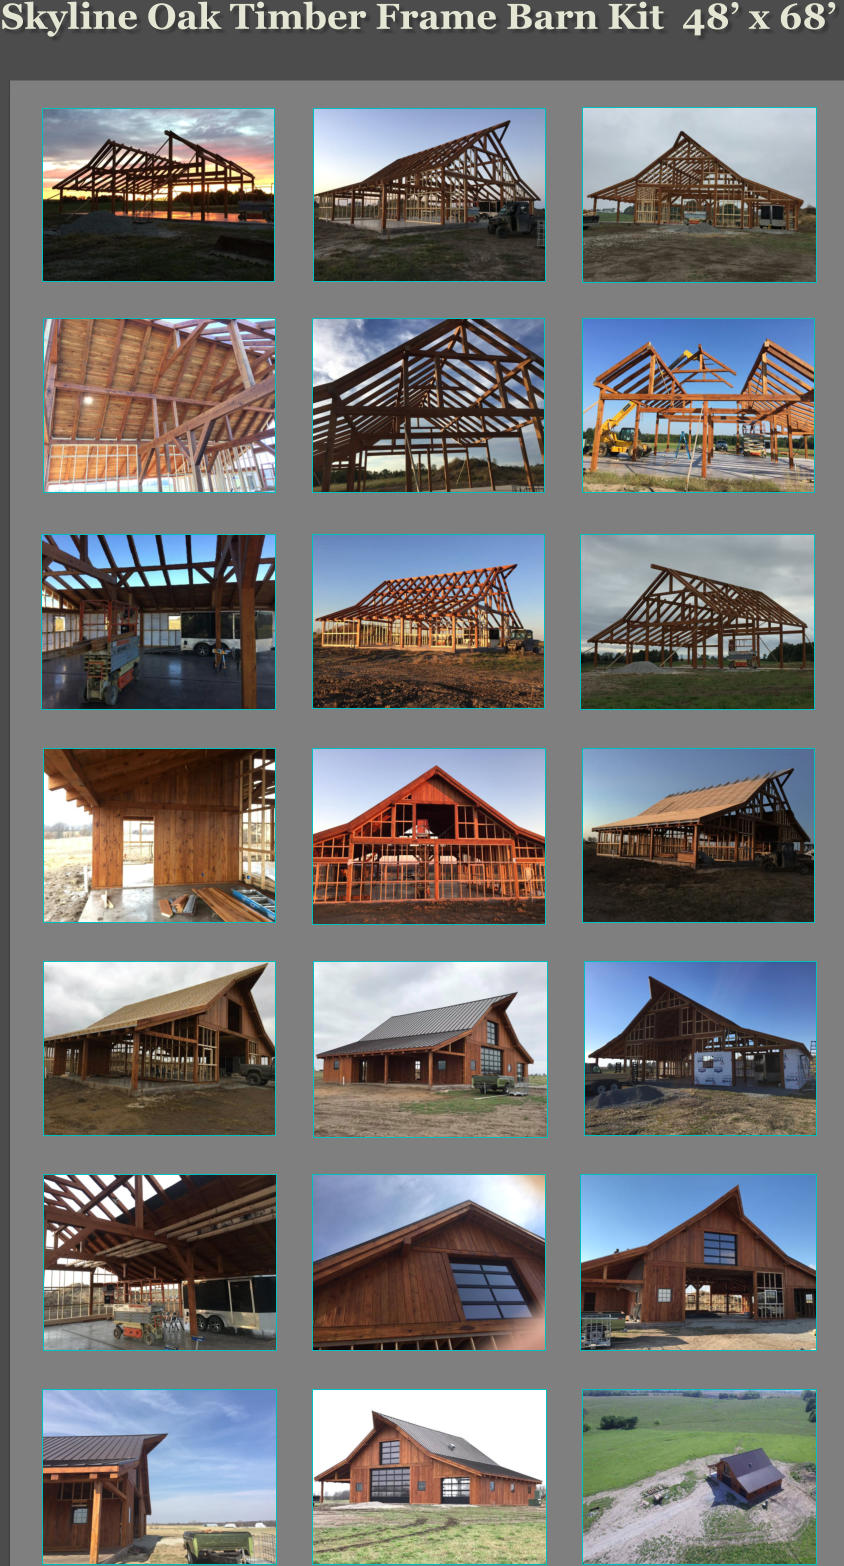 Skyline Oak Timber Frame Barn Kit  48’ x 68’